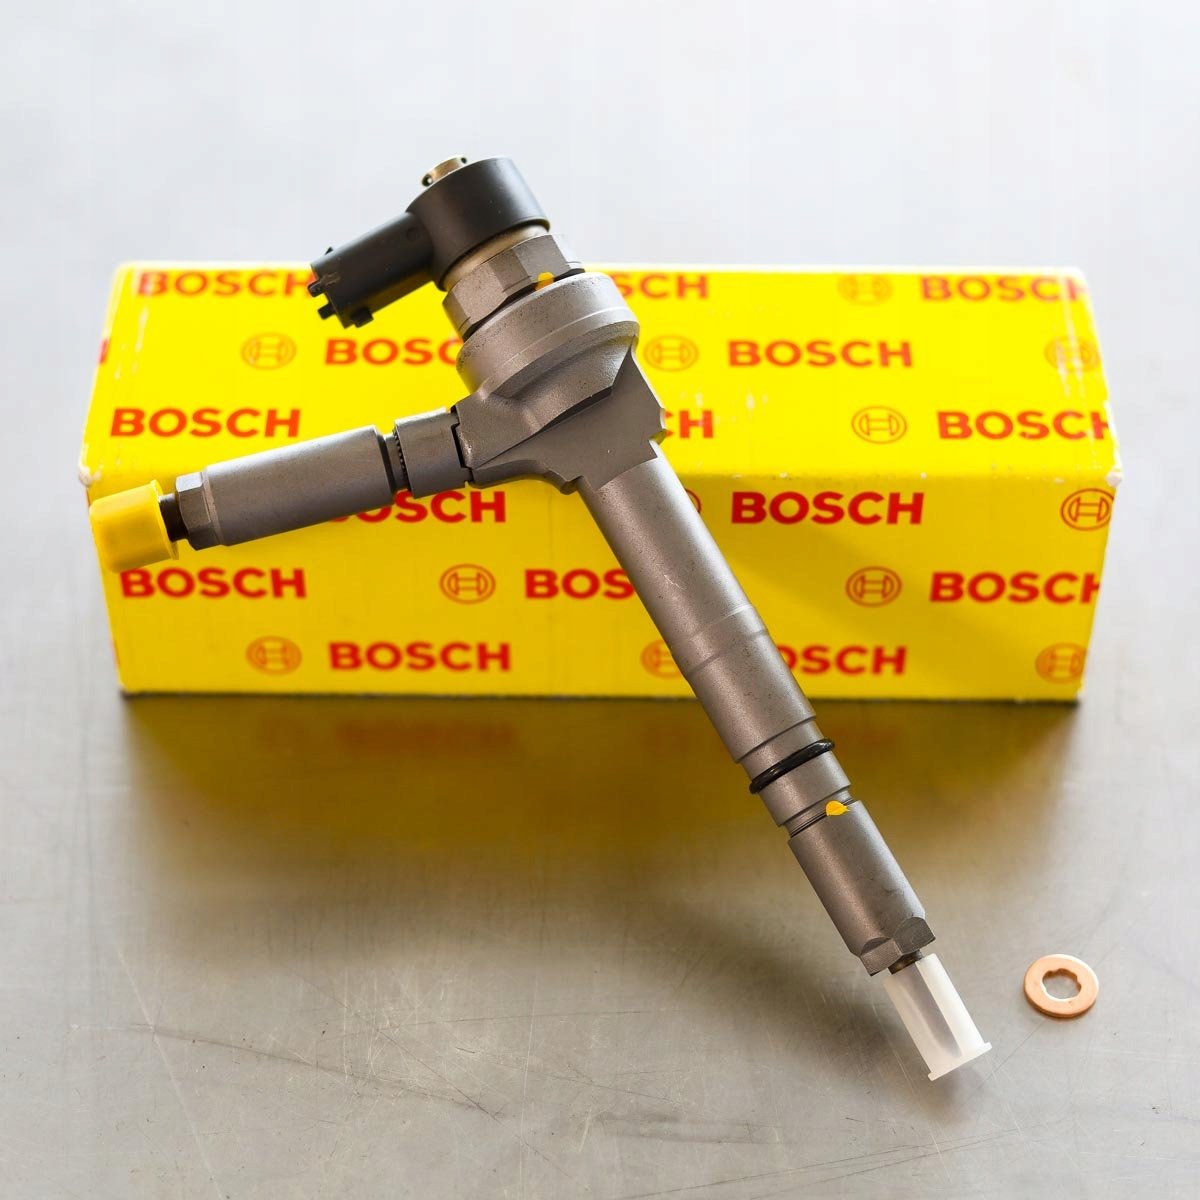 Wtryskiwacz Bosch zregenerowany przygotowany do wysyłki do zamawiającego na gwarancji na okres 24 miesięcy w atrakcyjnej cenie